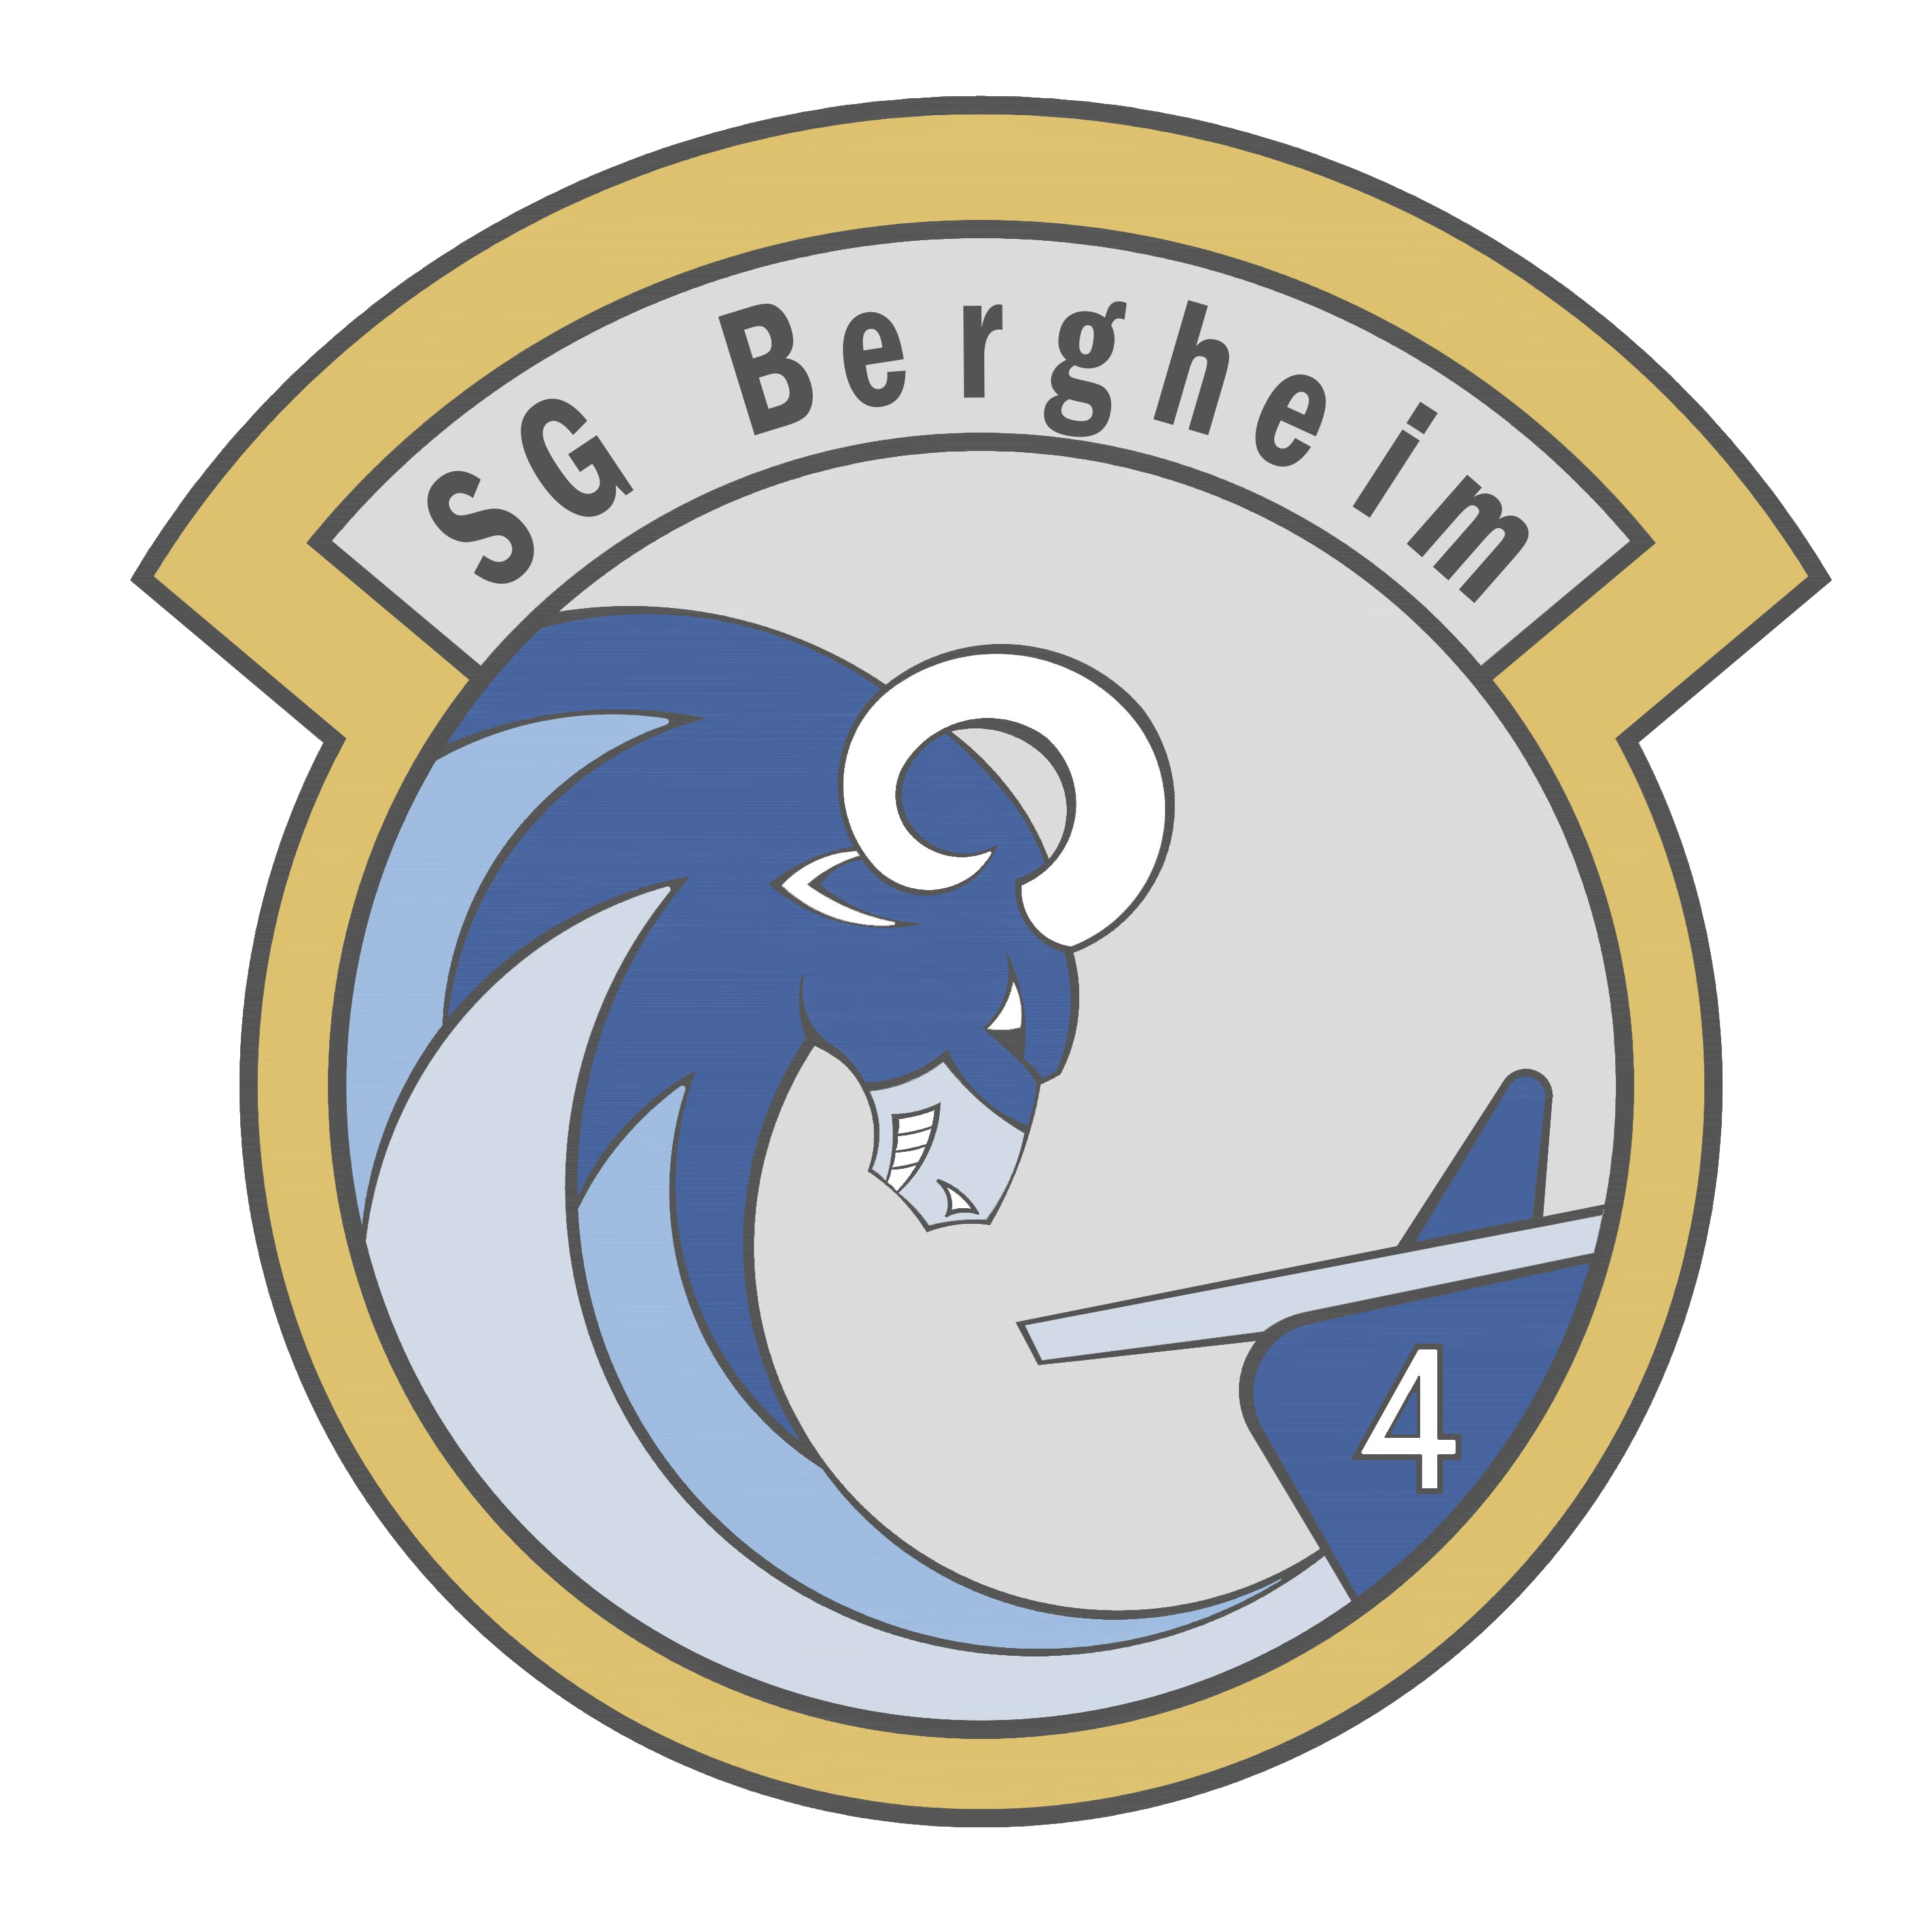 https://sg-bergheim.de/wp-content/uploads/2023/07/SG-Bergheim-Logo-Links-1.png